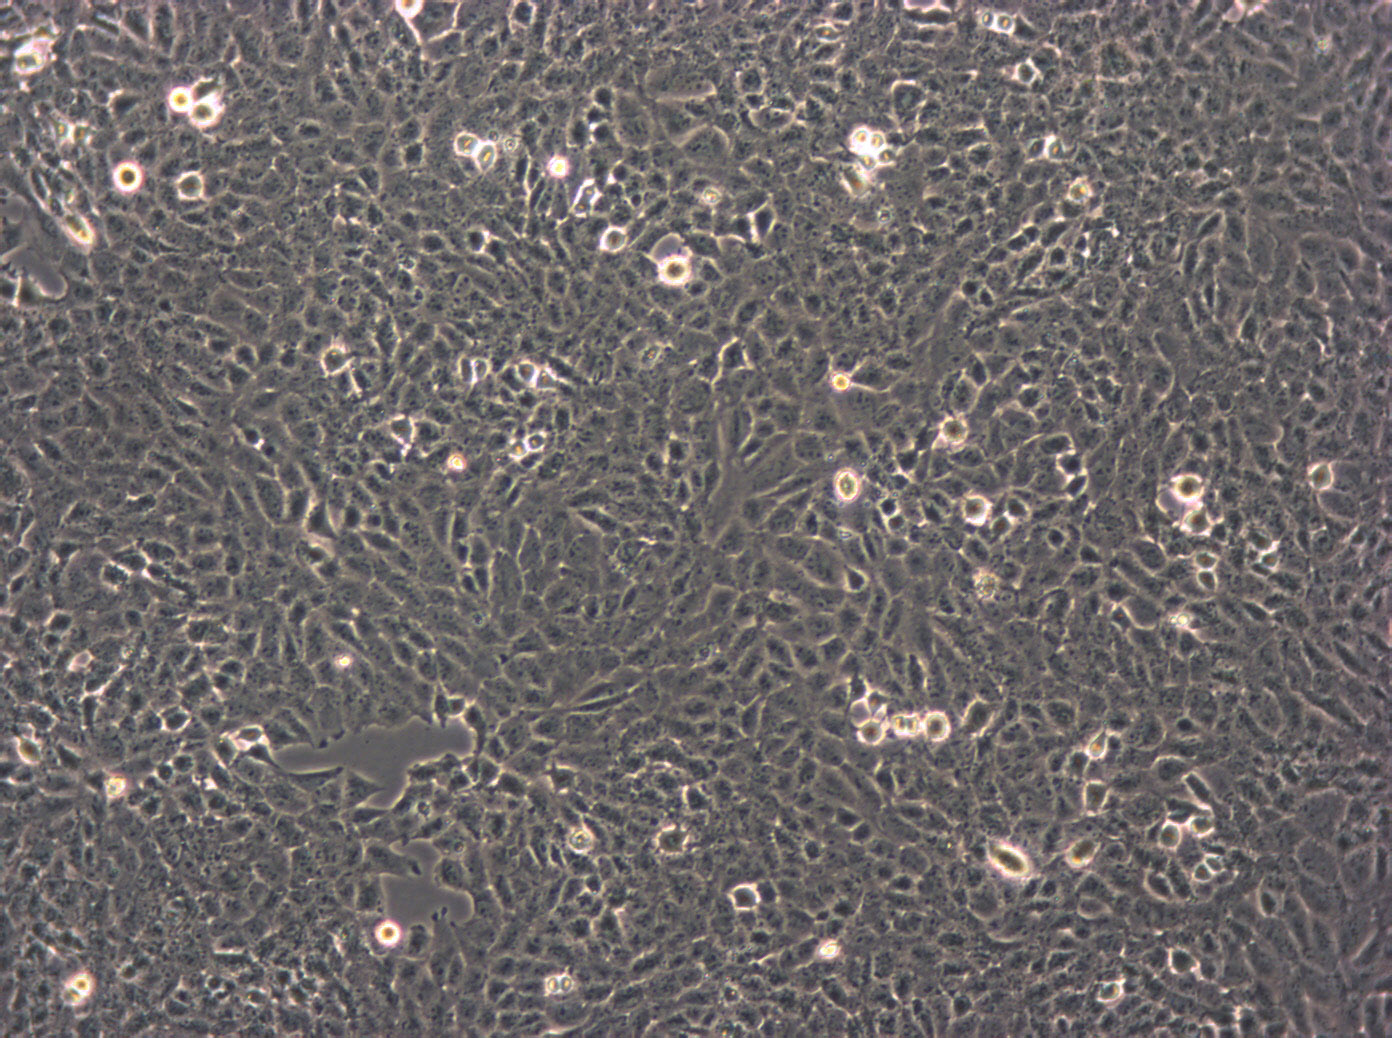 NCI-H1648 epithelioid cells人肺癌细胞系